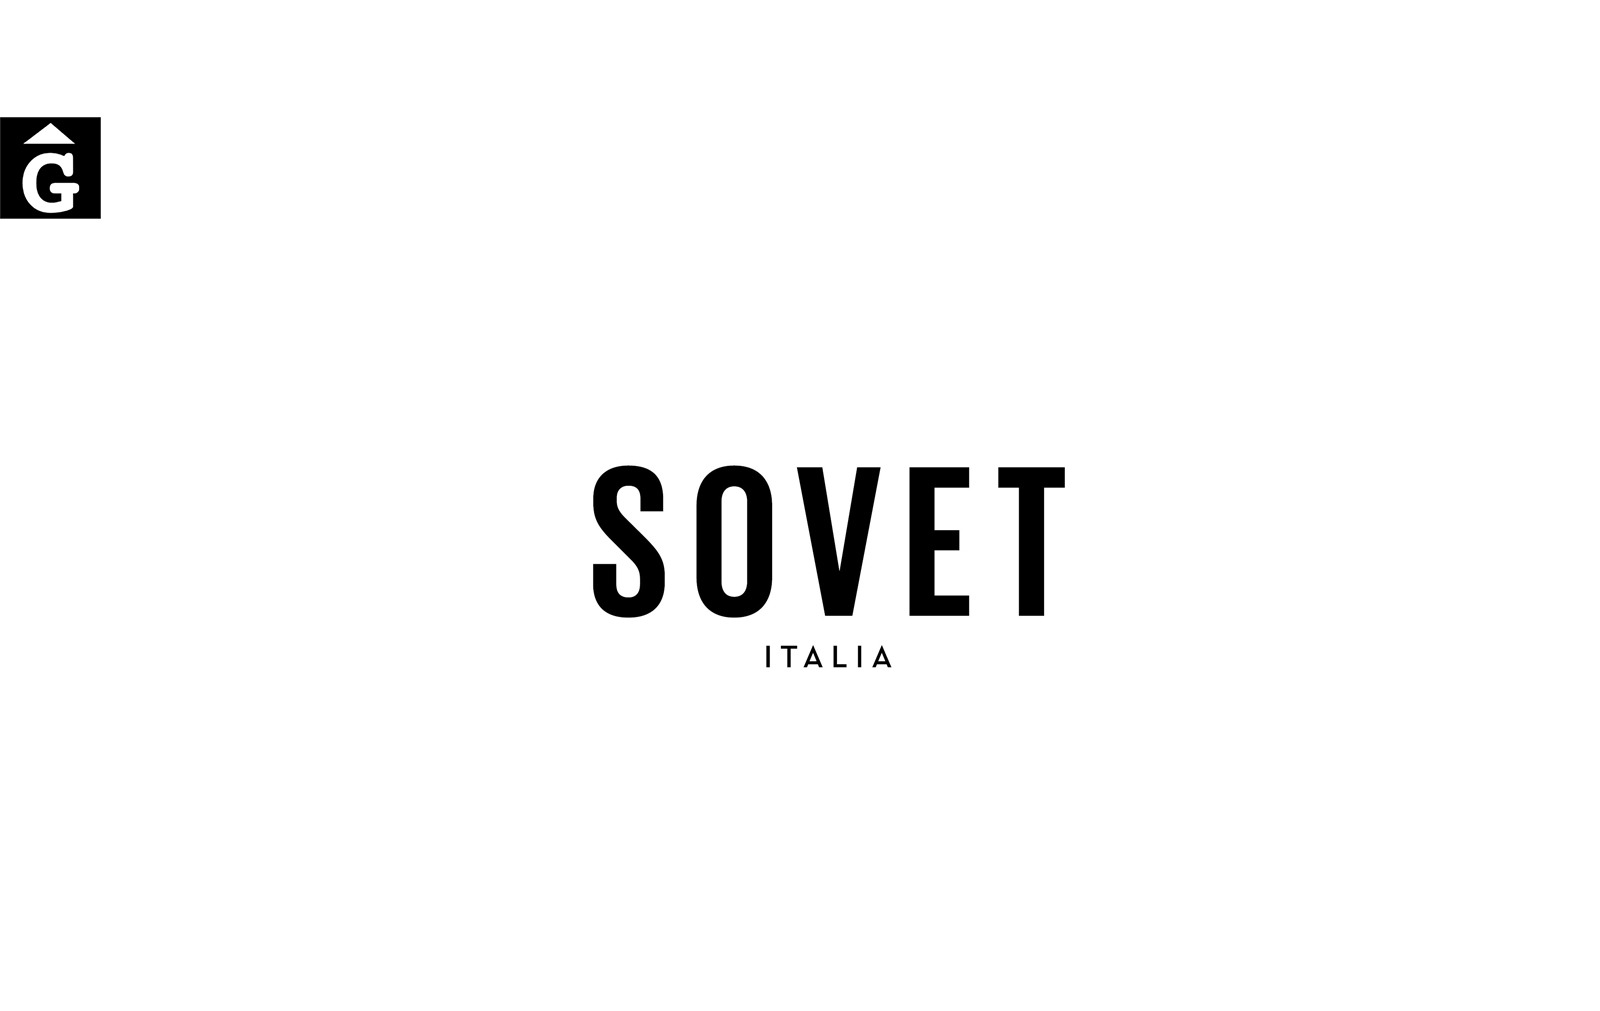 Sovert Italia